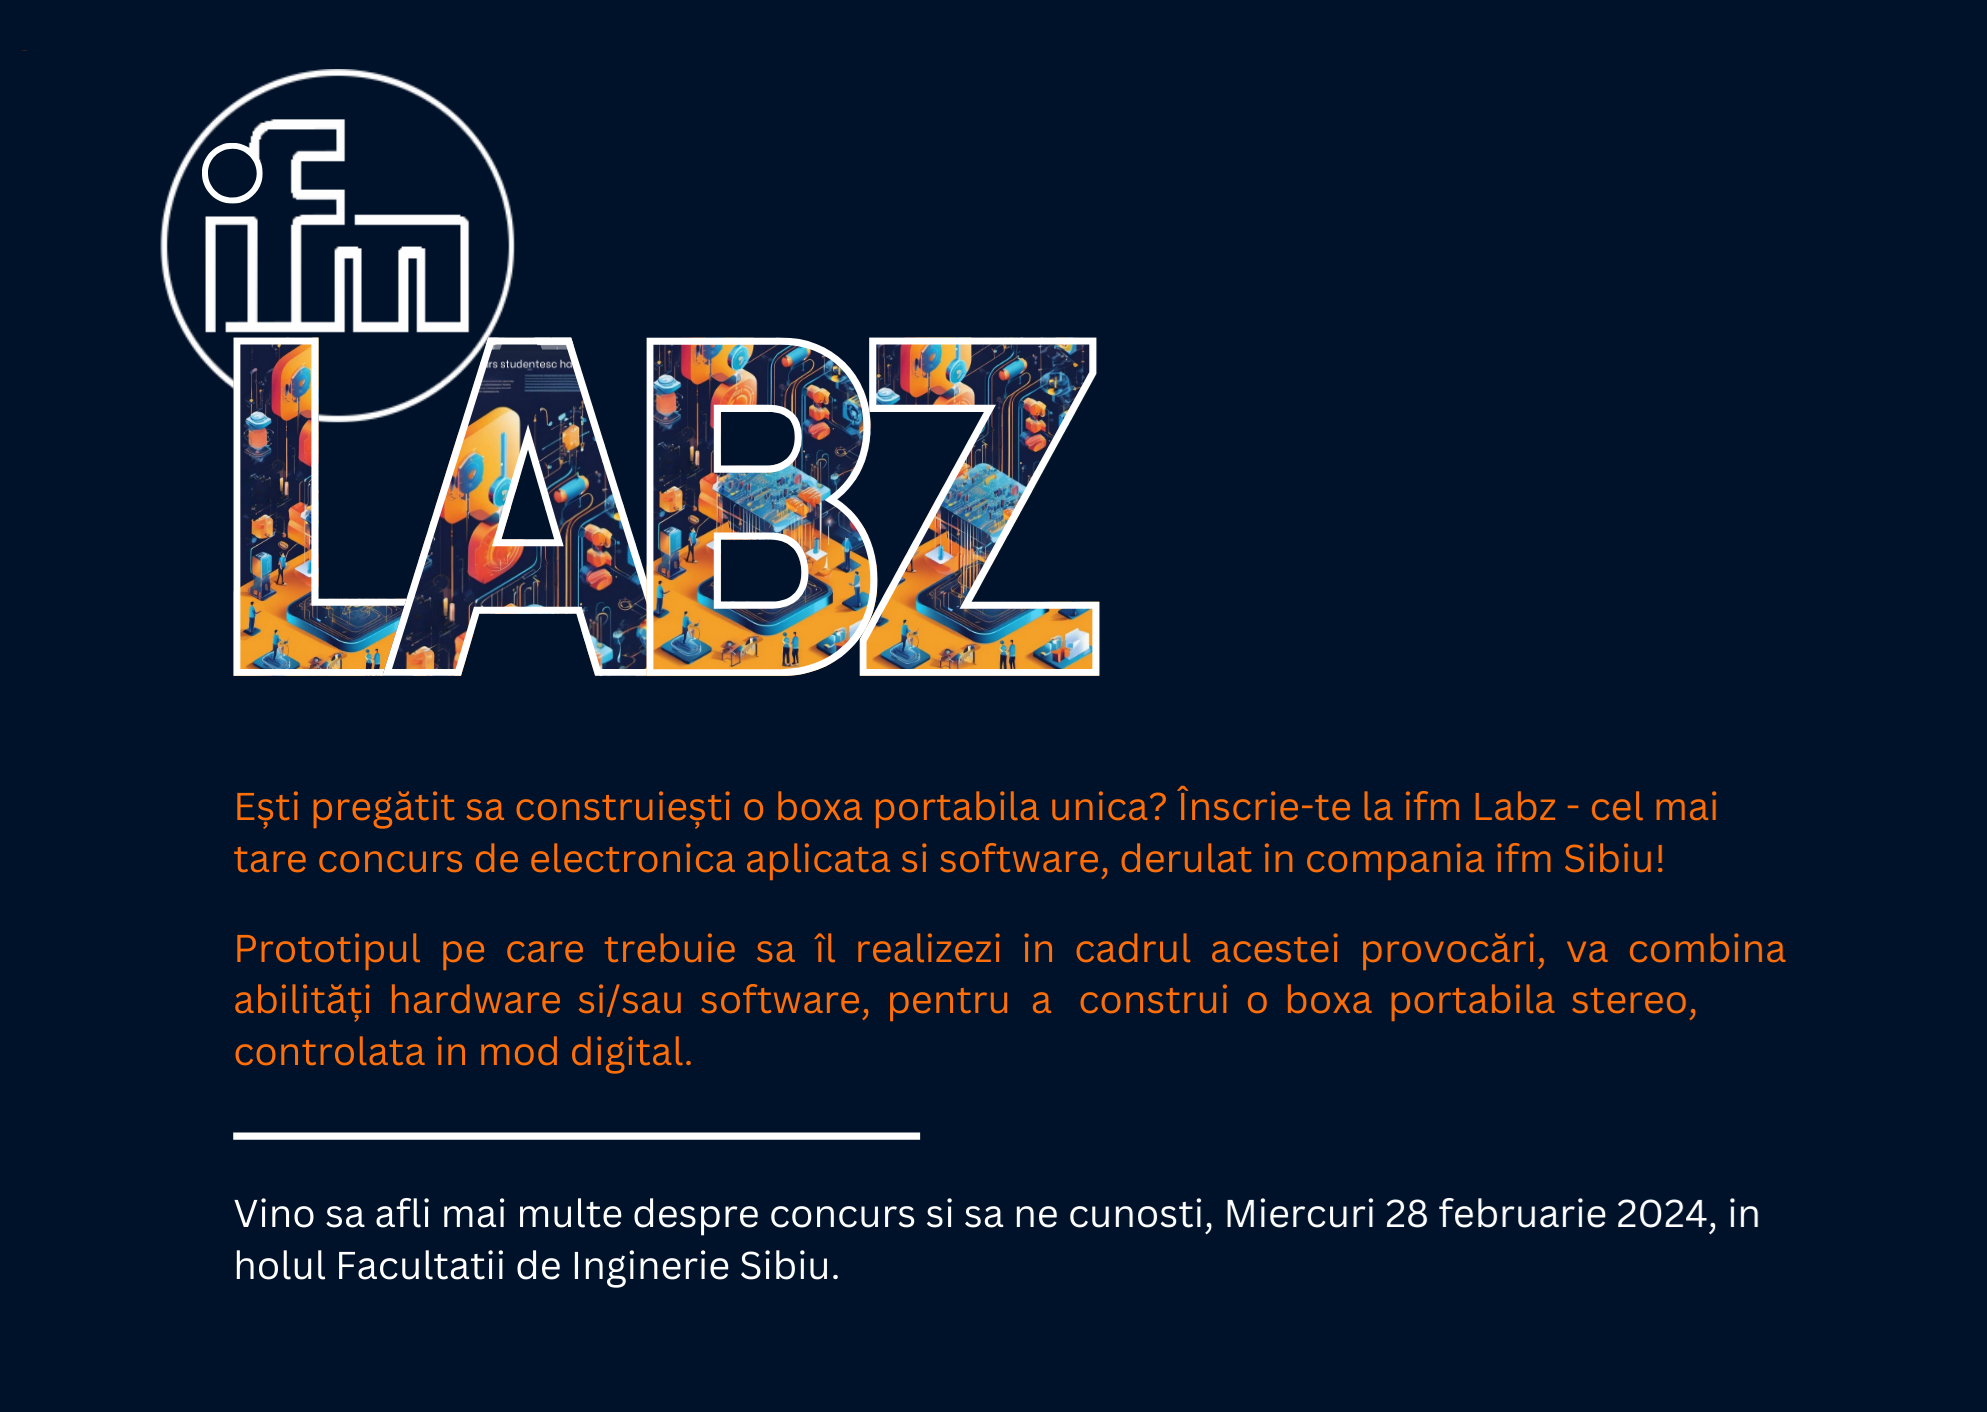 IFM Labz -prezentare Concurs Electronică Aplicată și Software